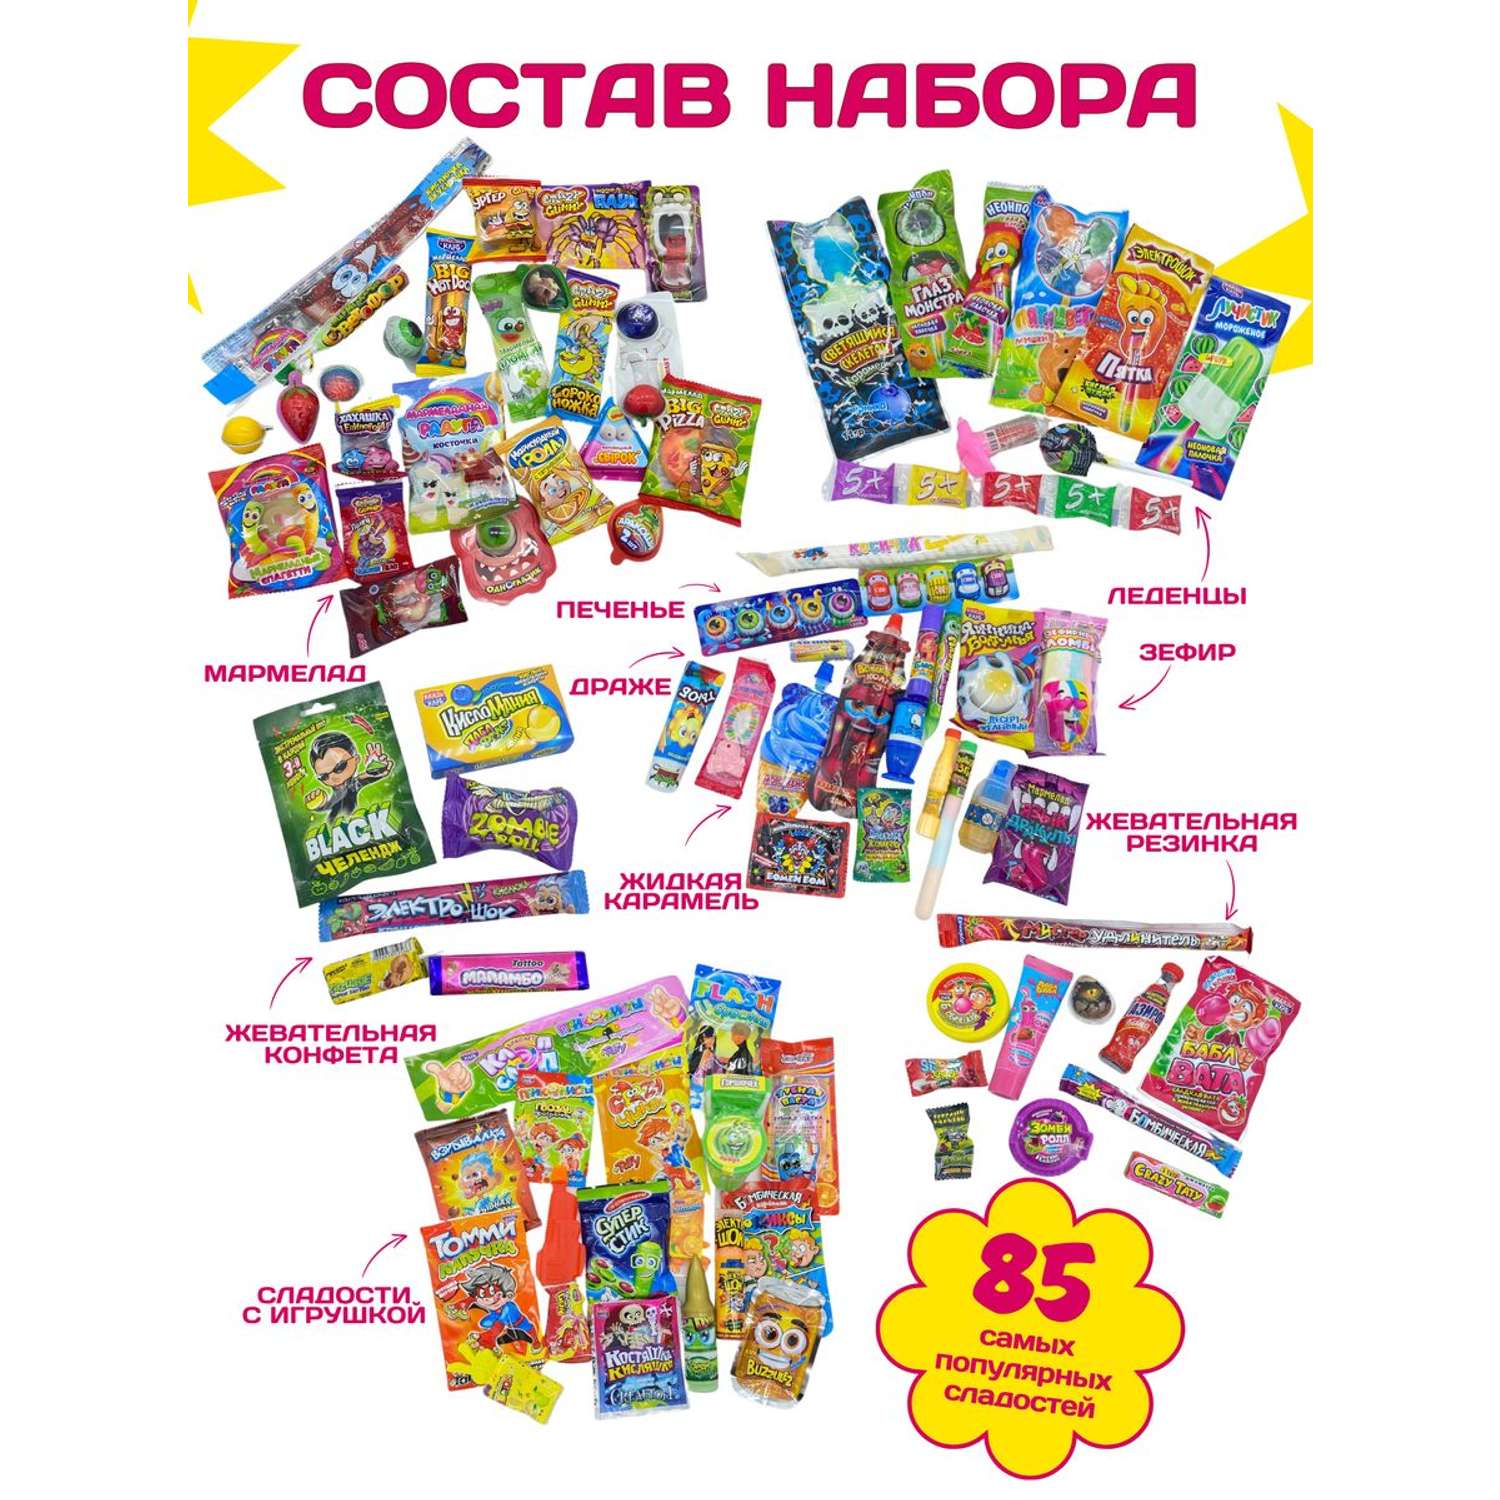 Сладкий набор VKUSNODAY подарочный 85 конфет - фото 2